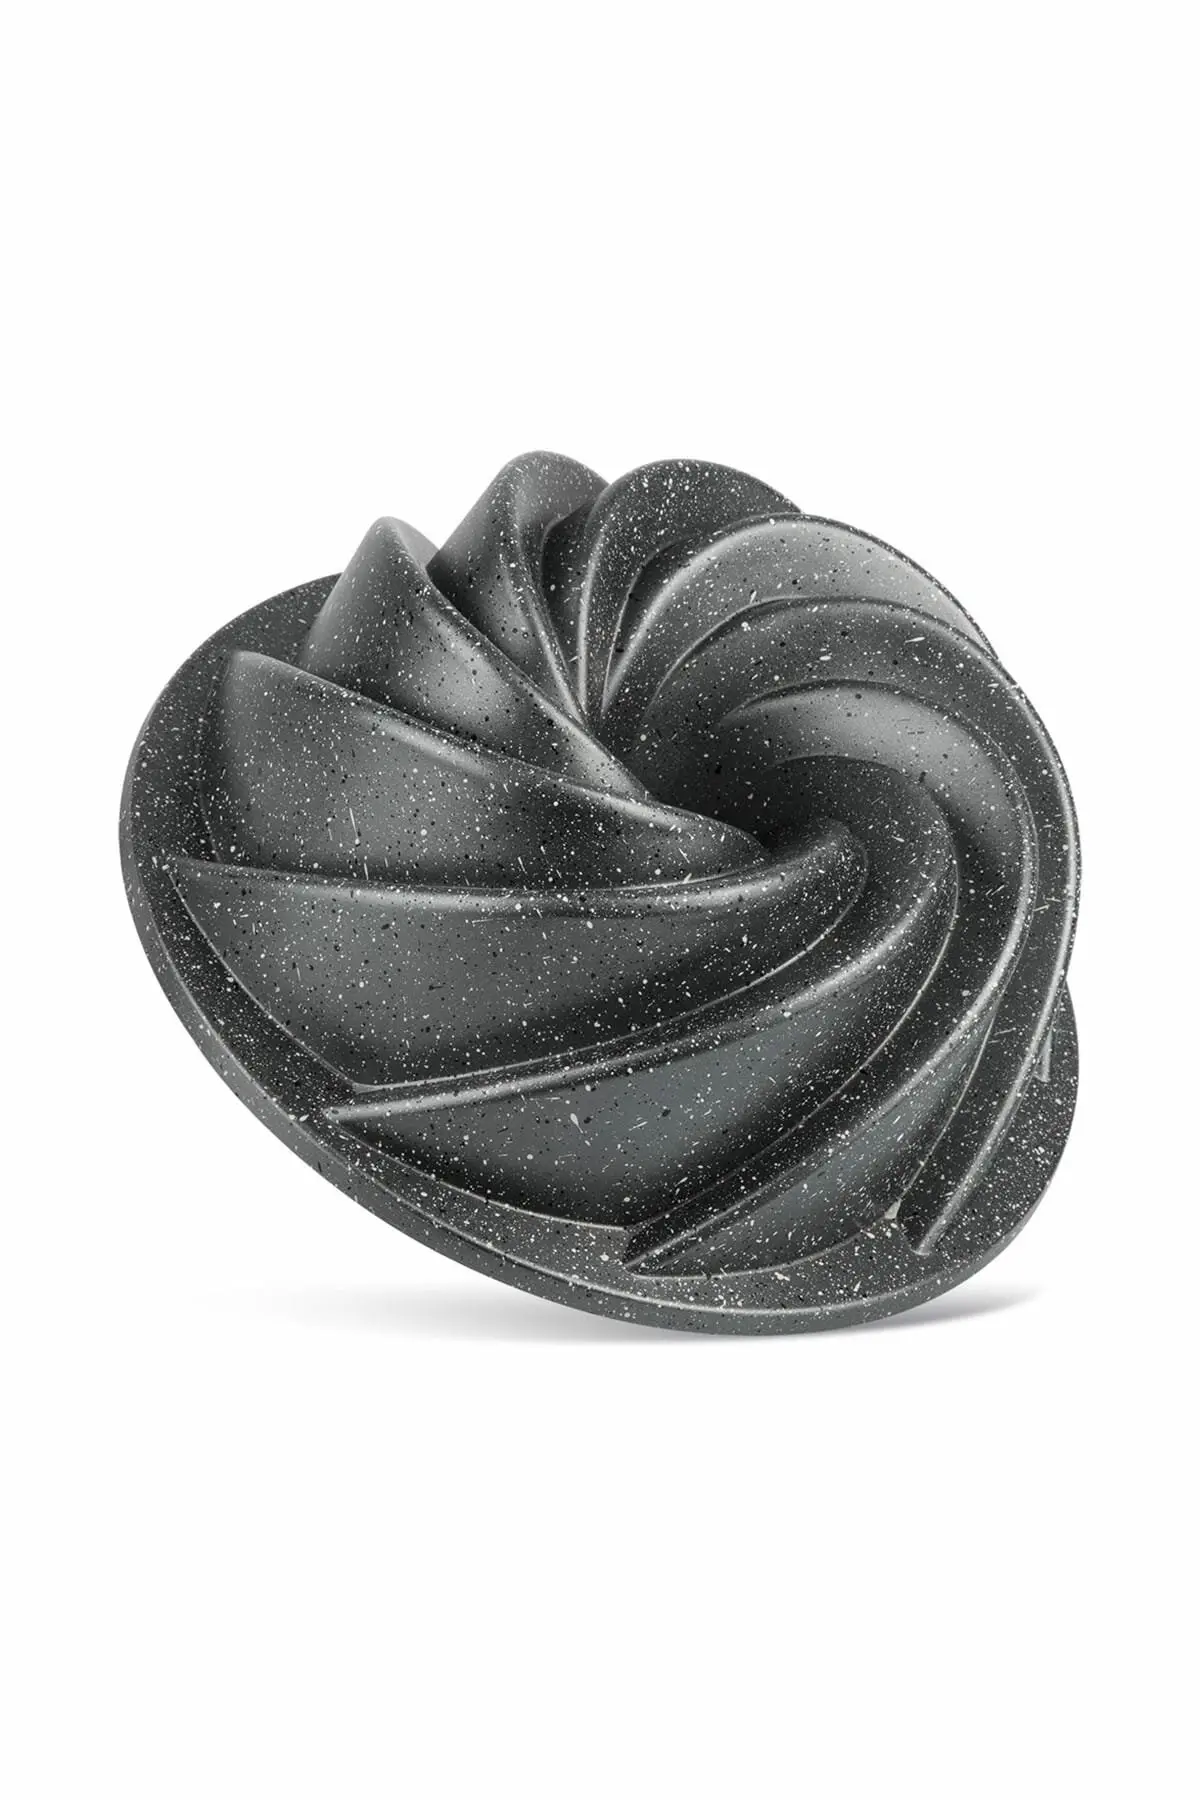 ThermoAD Döküm Granit 24cm Rüzgargülü Kek Kalıbı (3 Renk)